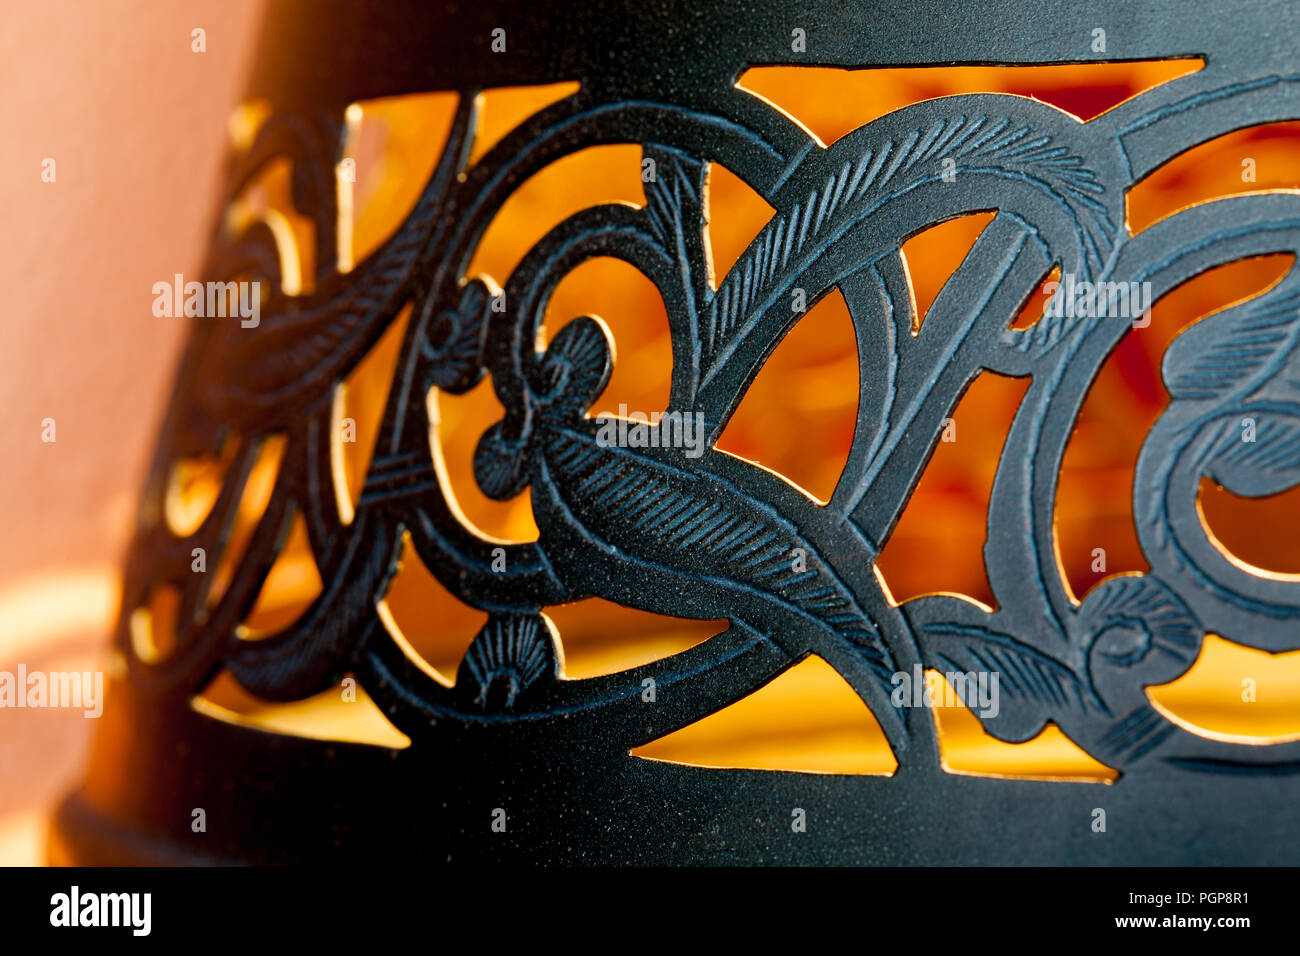 Marokkanische Black Metal cutwork Lampenschirm in Schwarz. Close up Details der wirbelnden Floral Design. Mit goldenem Licht beleuchtet. Marrakesch, Marokko Stockfoto